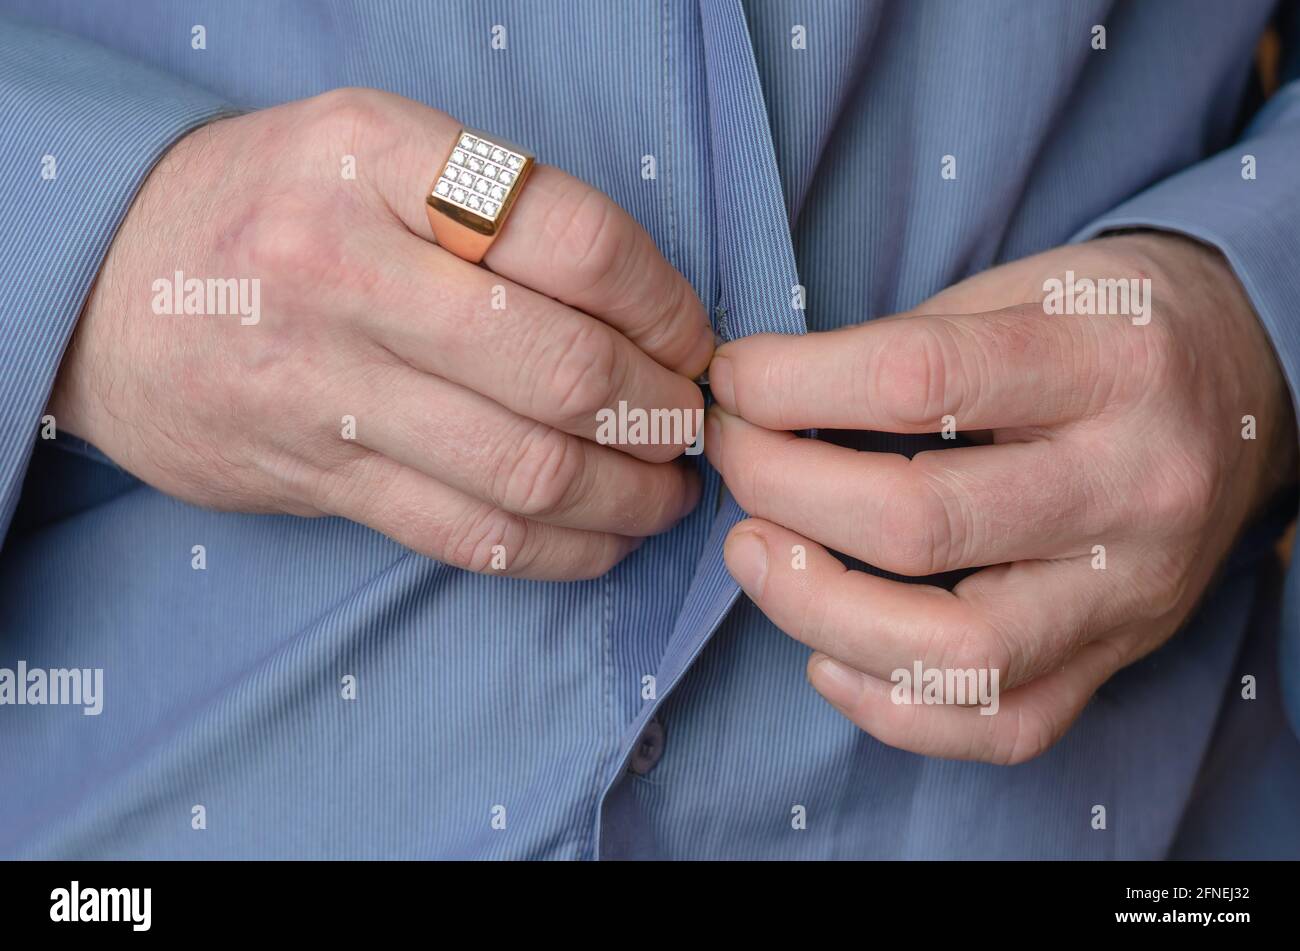 Nahaufnahme seiner Hände, die den Knopf auf seinem blauen Hemd drücken. Ein  erwachsener Mann mittleren Alters mit einem goldenen Ring an seinem  Zeigefinger. Person, die die Hände in Meilen hält Stockfotografie -